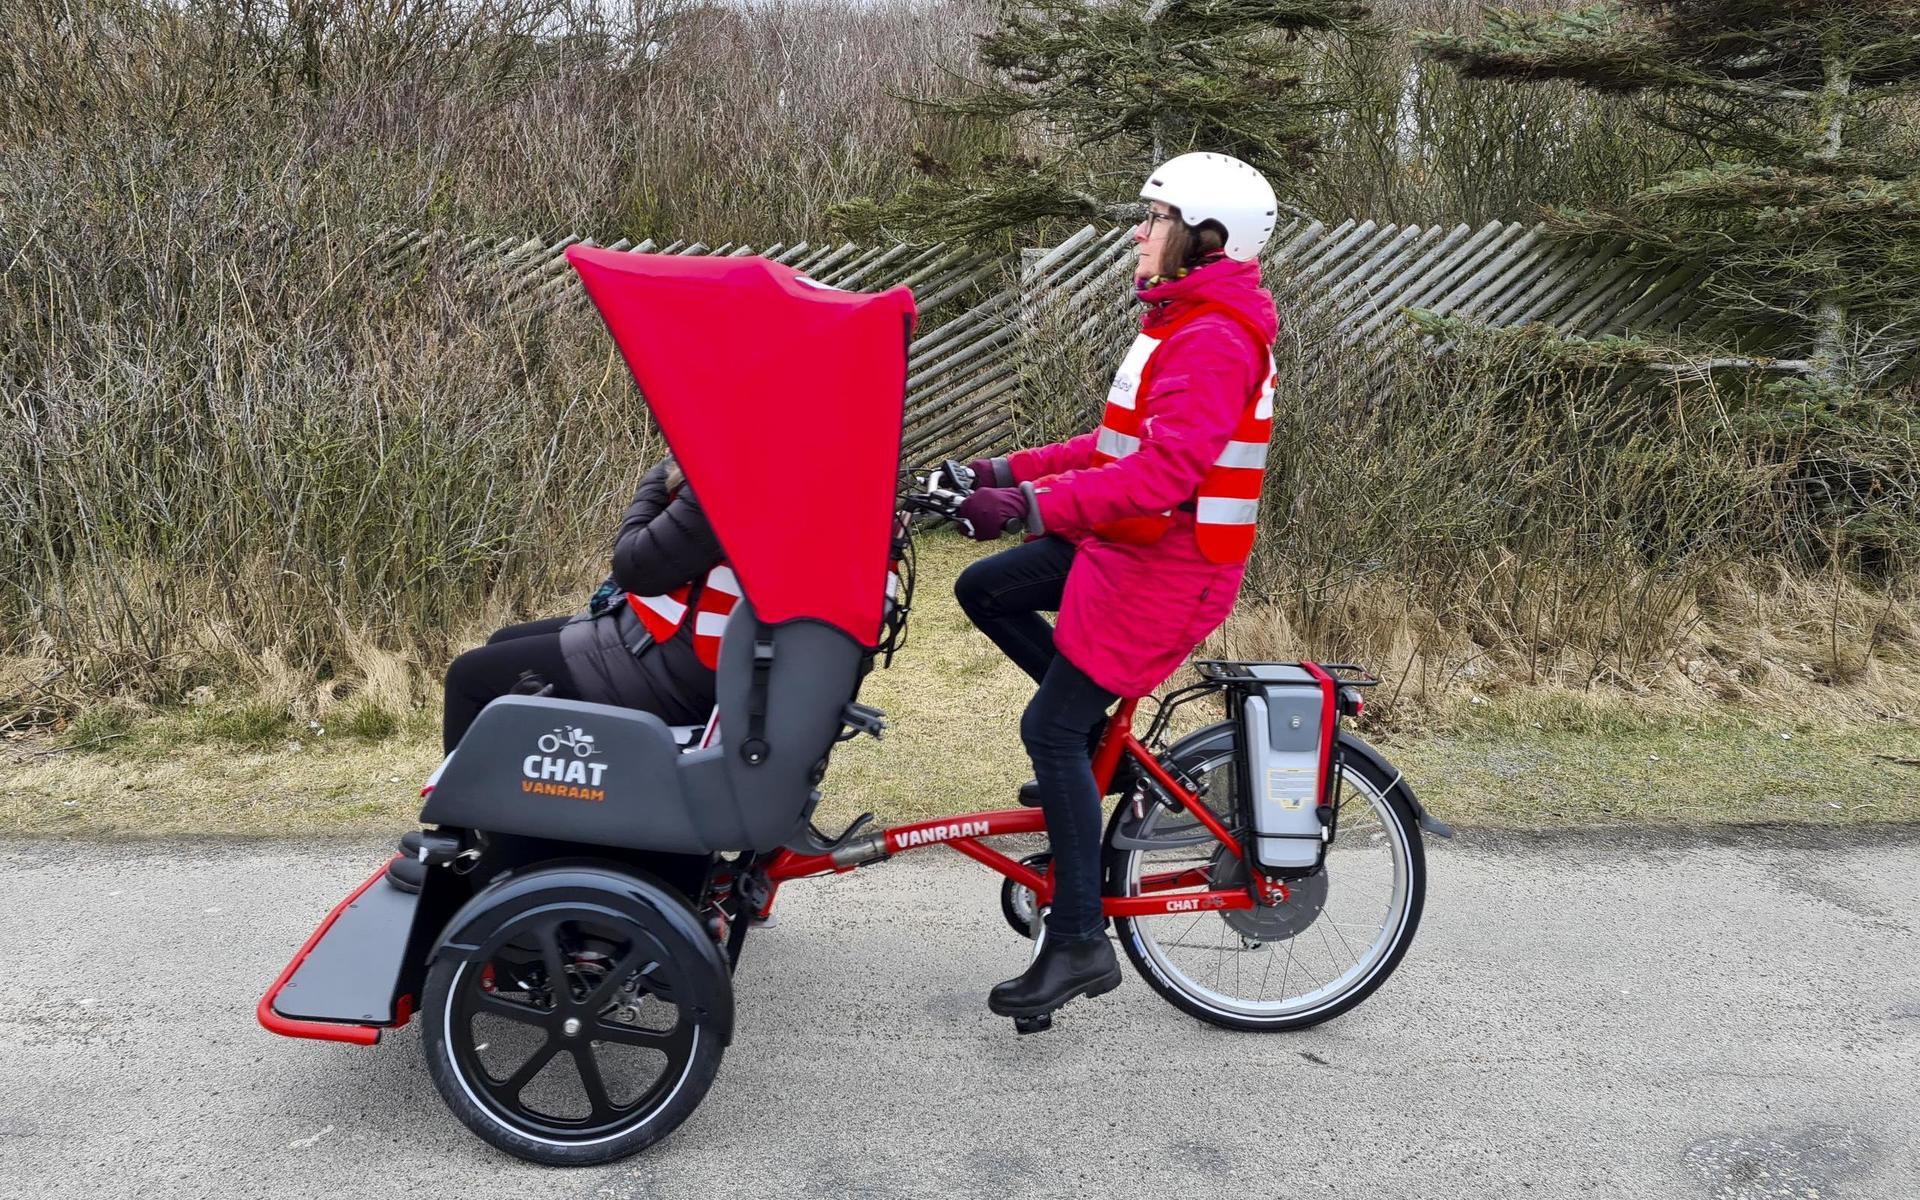 Cykling utan ålder i Varberg. Startar på Östergården. Röda korset.Sedan starten i Danmark 2012 har konceptet Cykling utan ålder spridits till ett 40-tal länder.